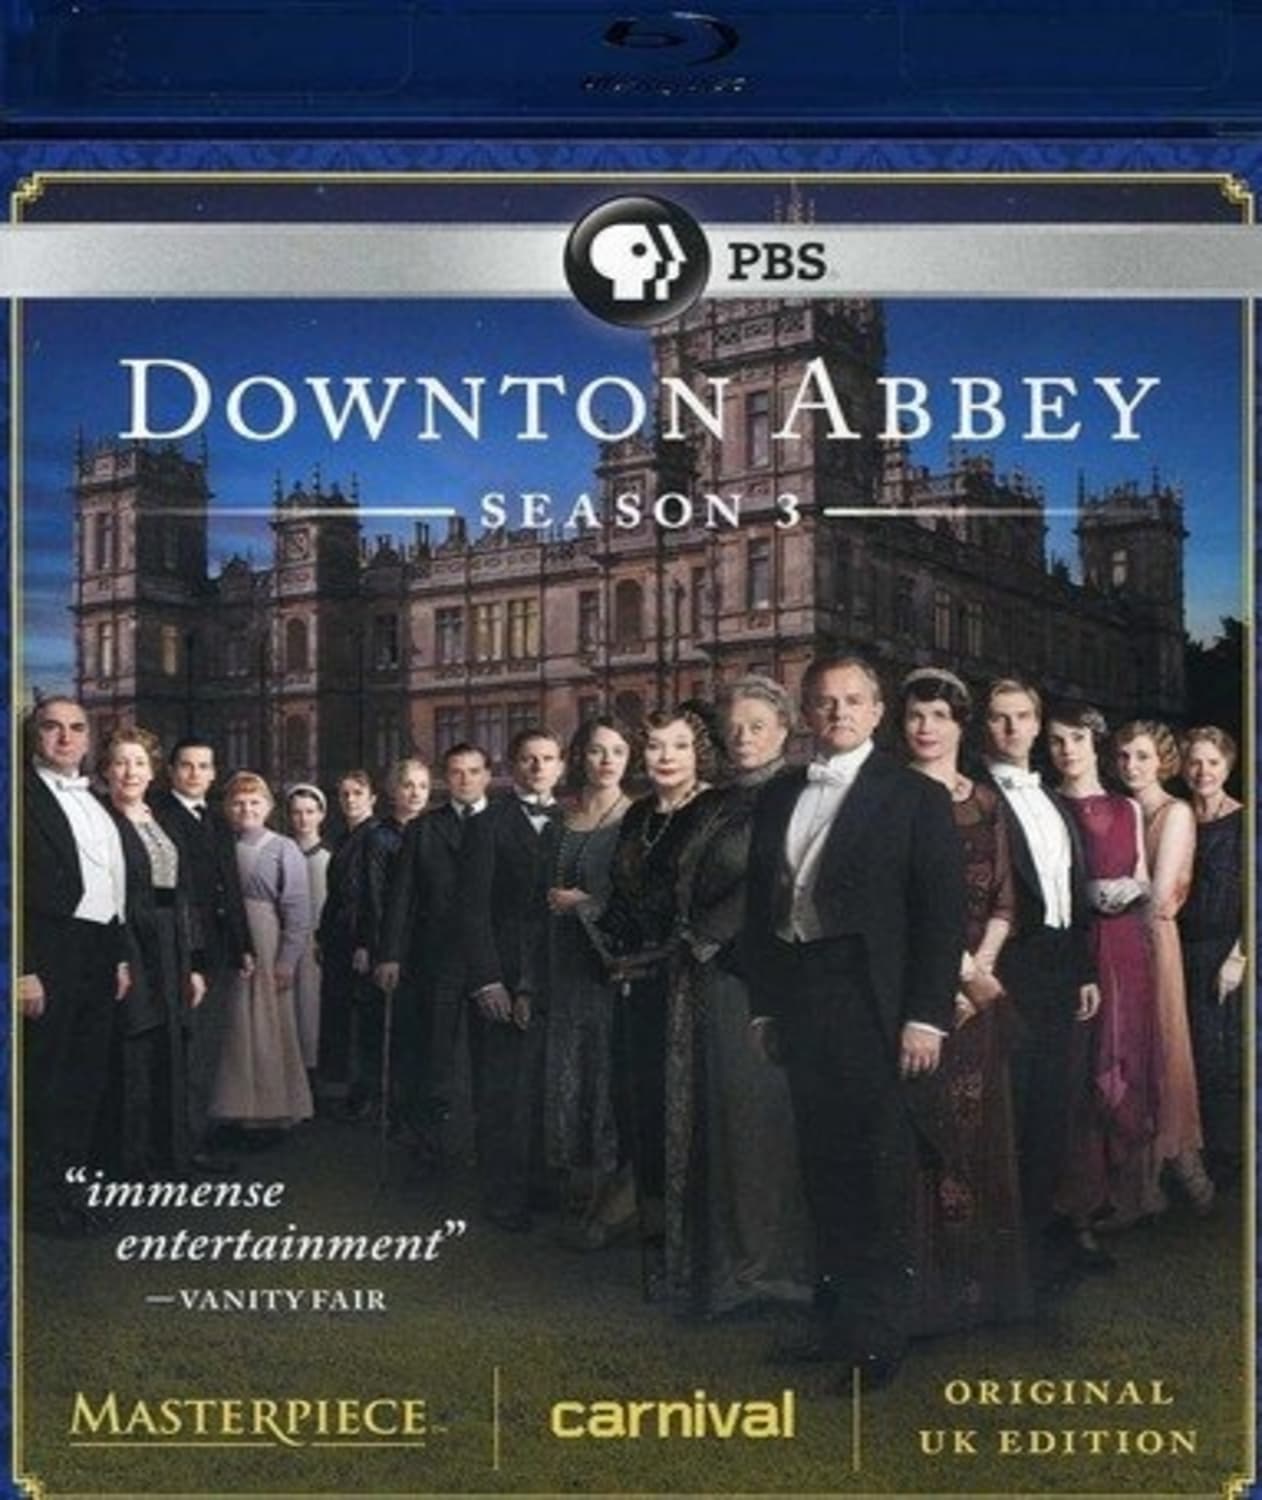 Downton Abbey Season 3 (U.K. Edition) (Blu-ray)